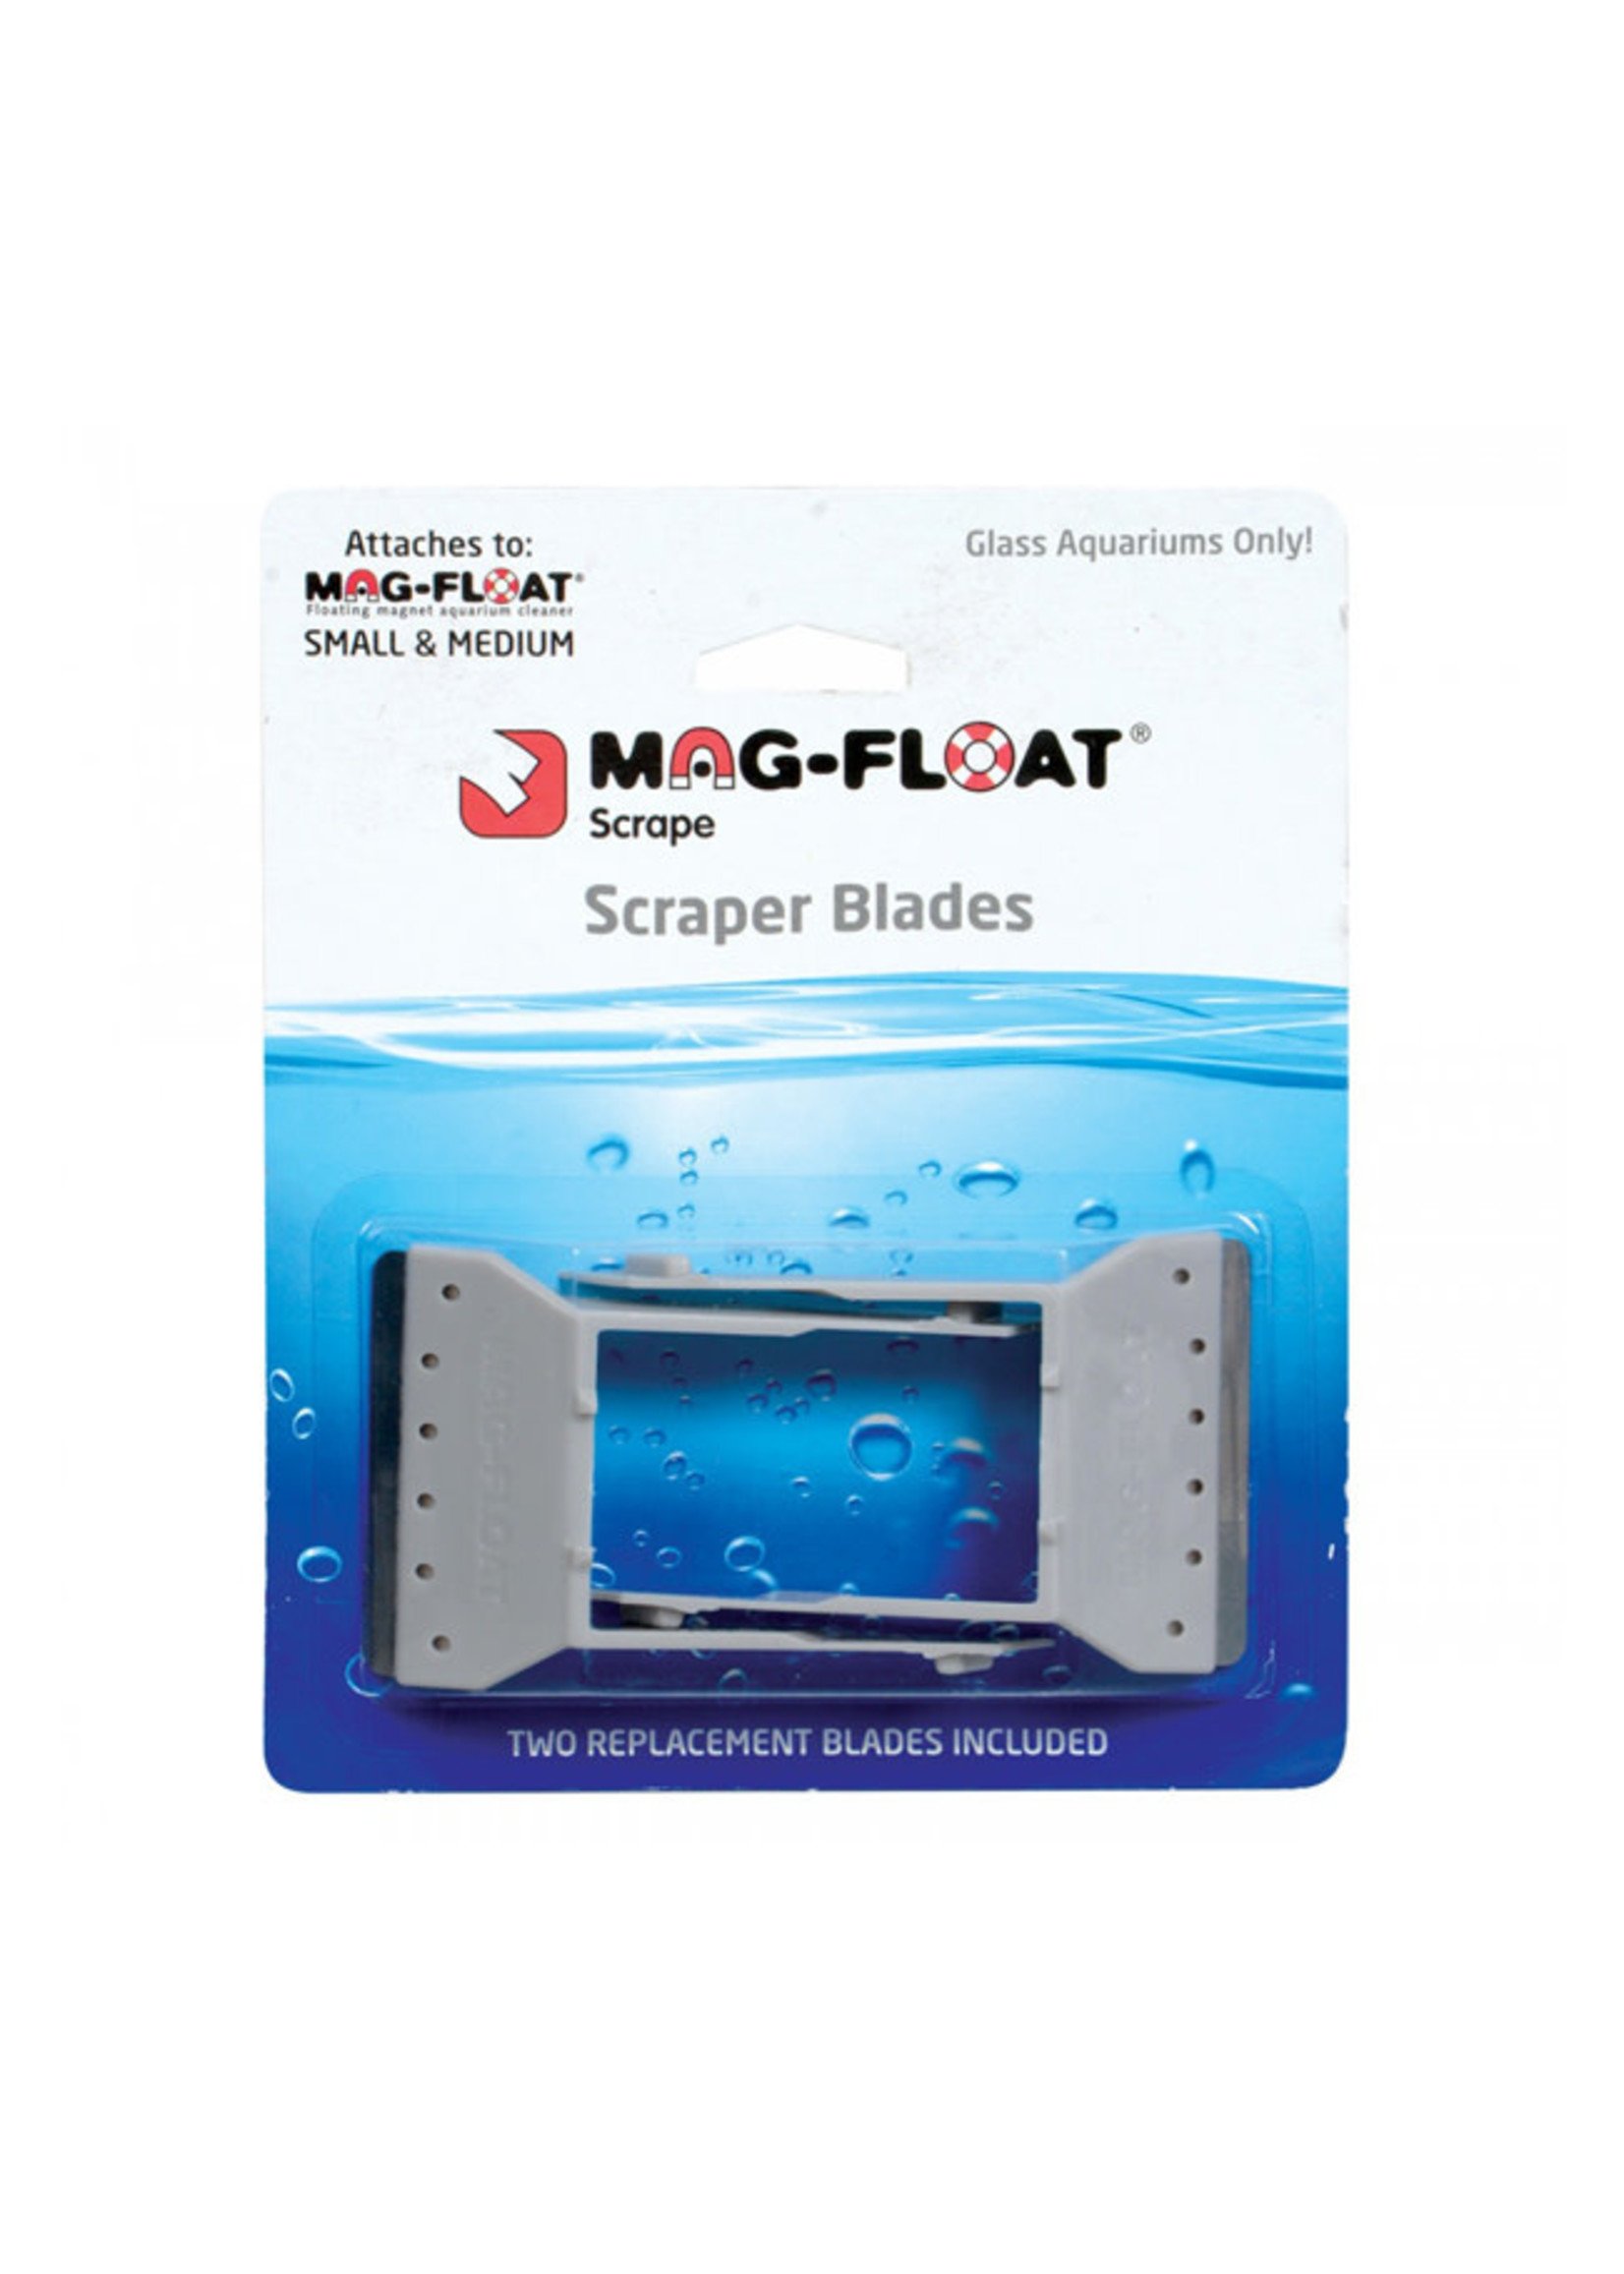 Mag-Float Mag-Float Scraper Blades for Glass Aquariums